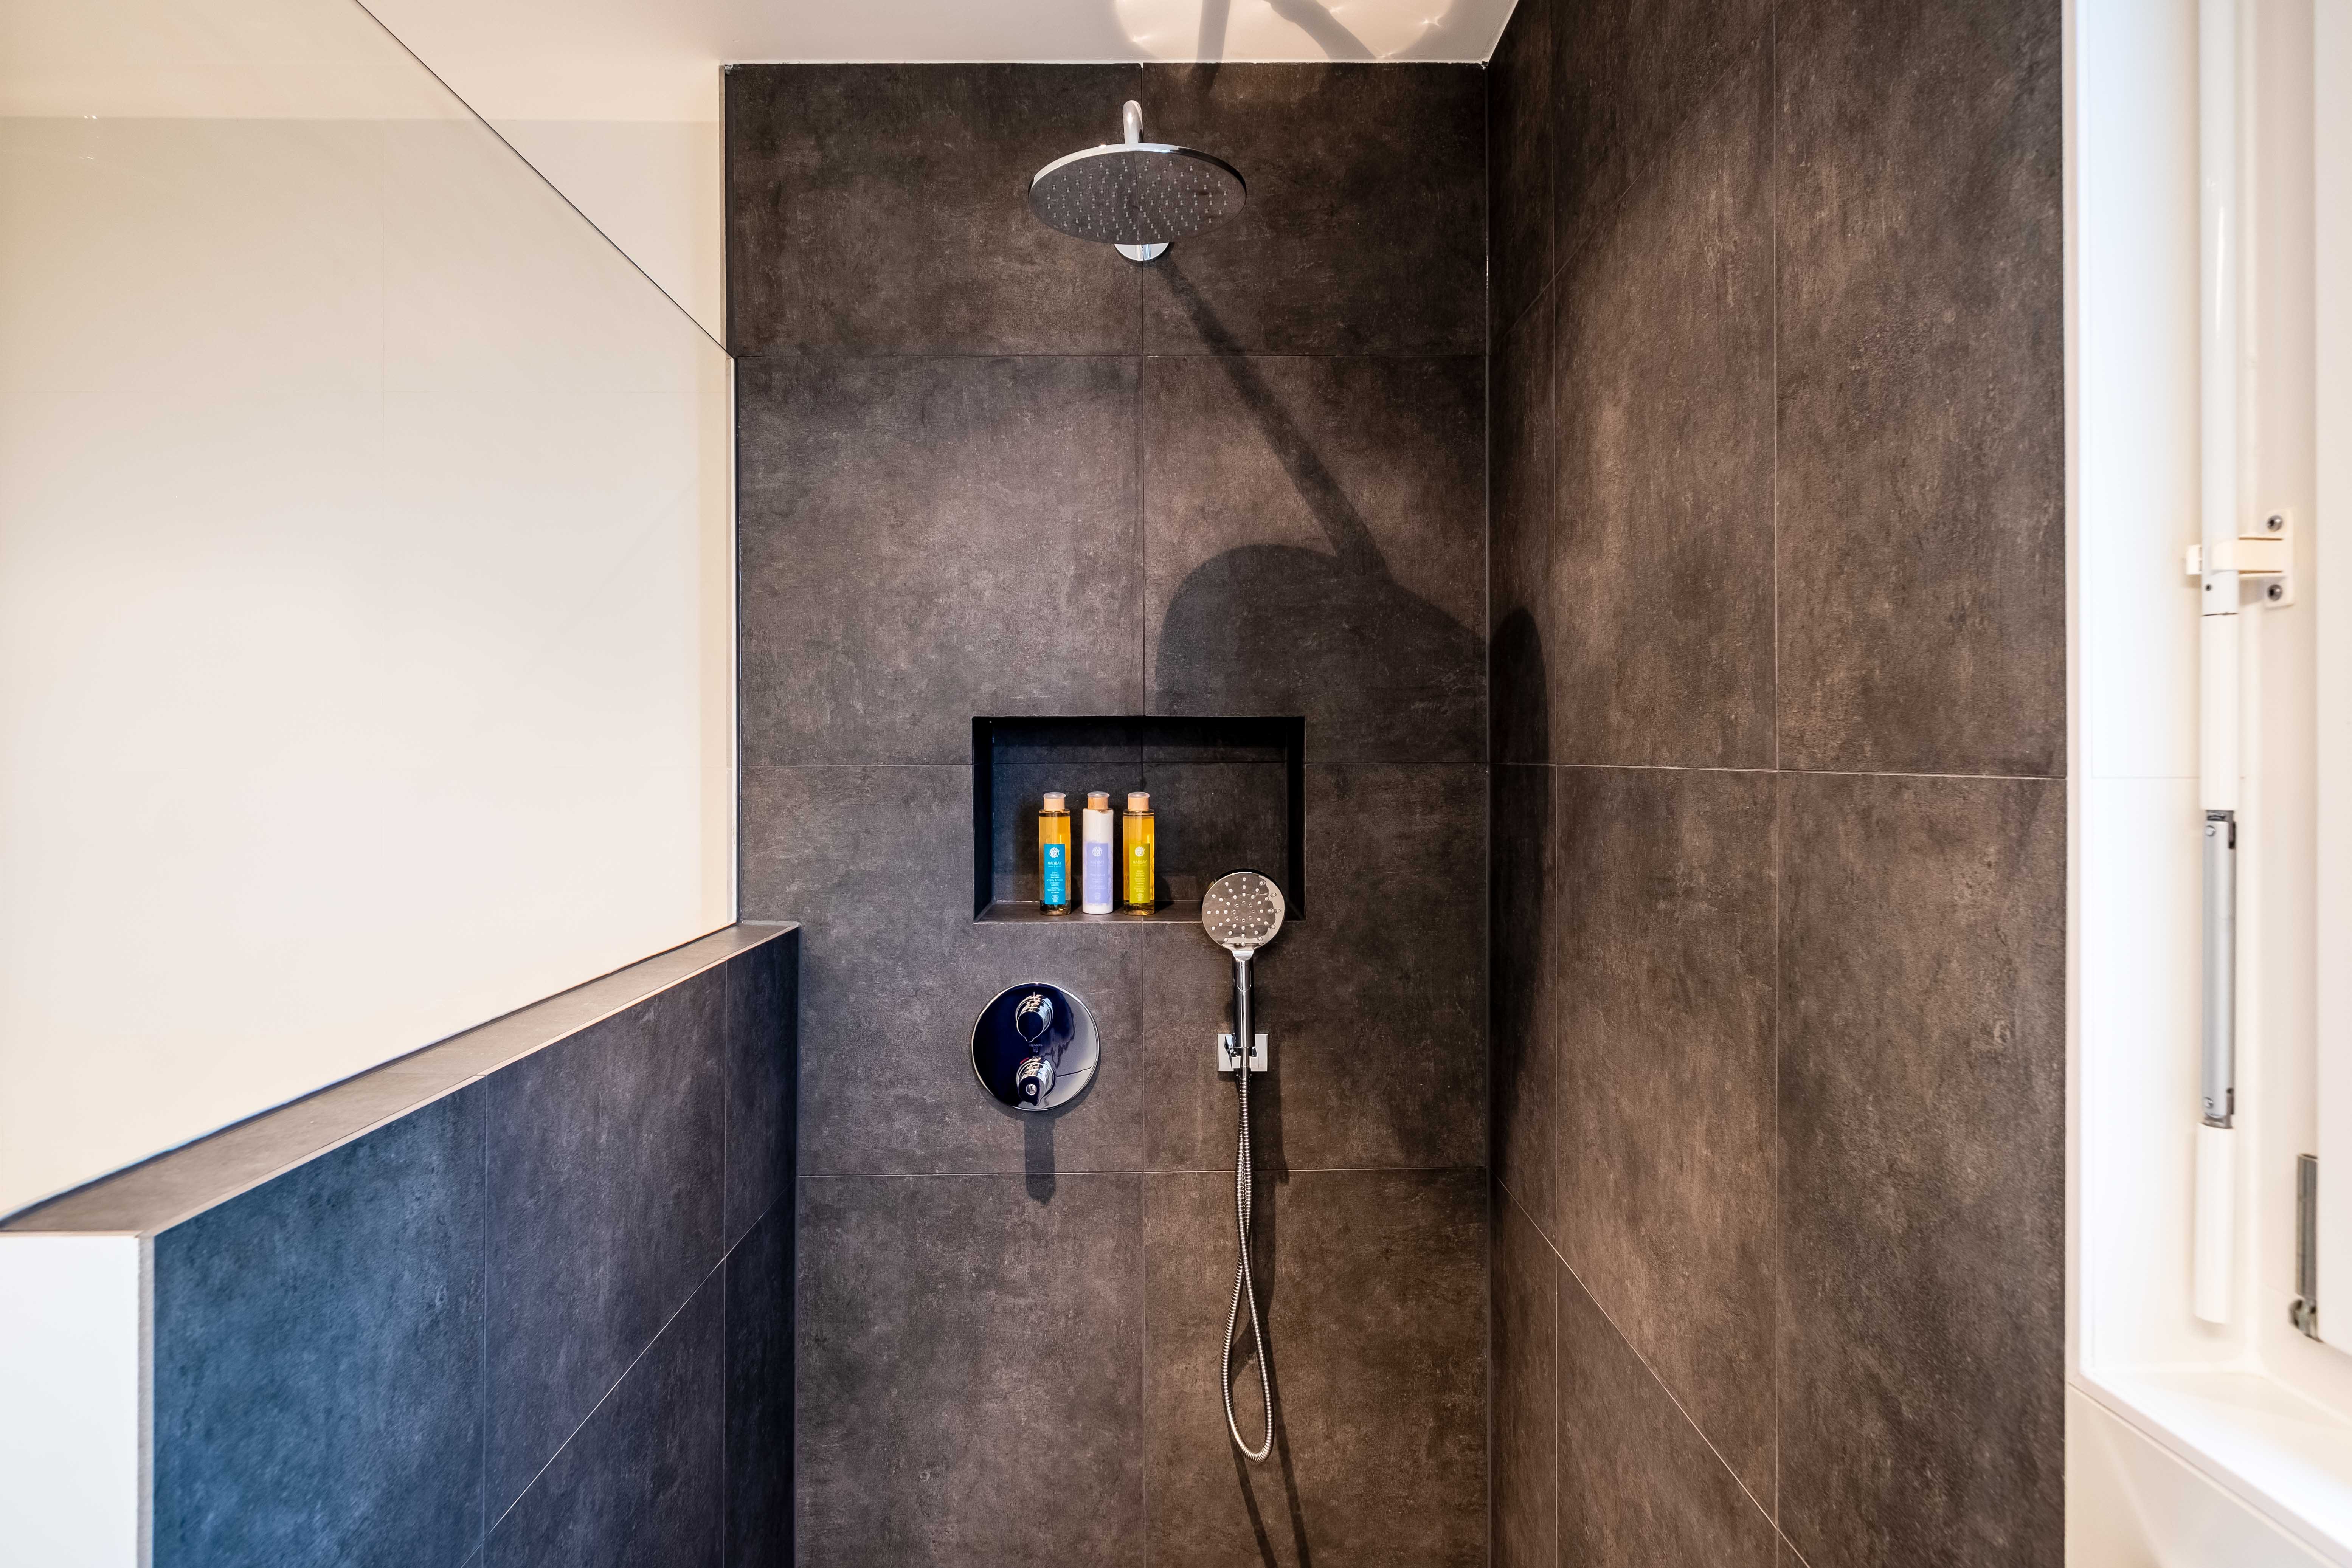 Imagen de una ducha minimalista, en un cuarto de baño moderno con azulejos azules, con presencia de tonos plata oscuro y ámbar oscuro.